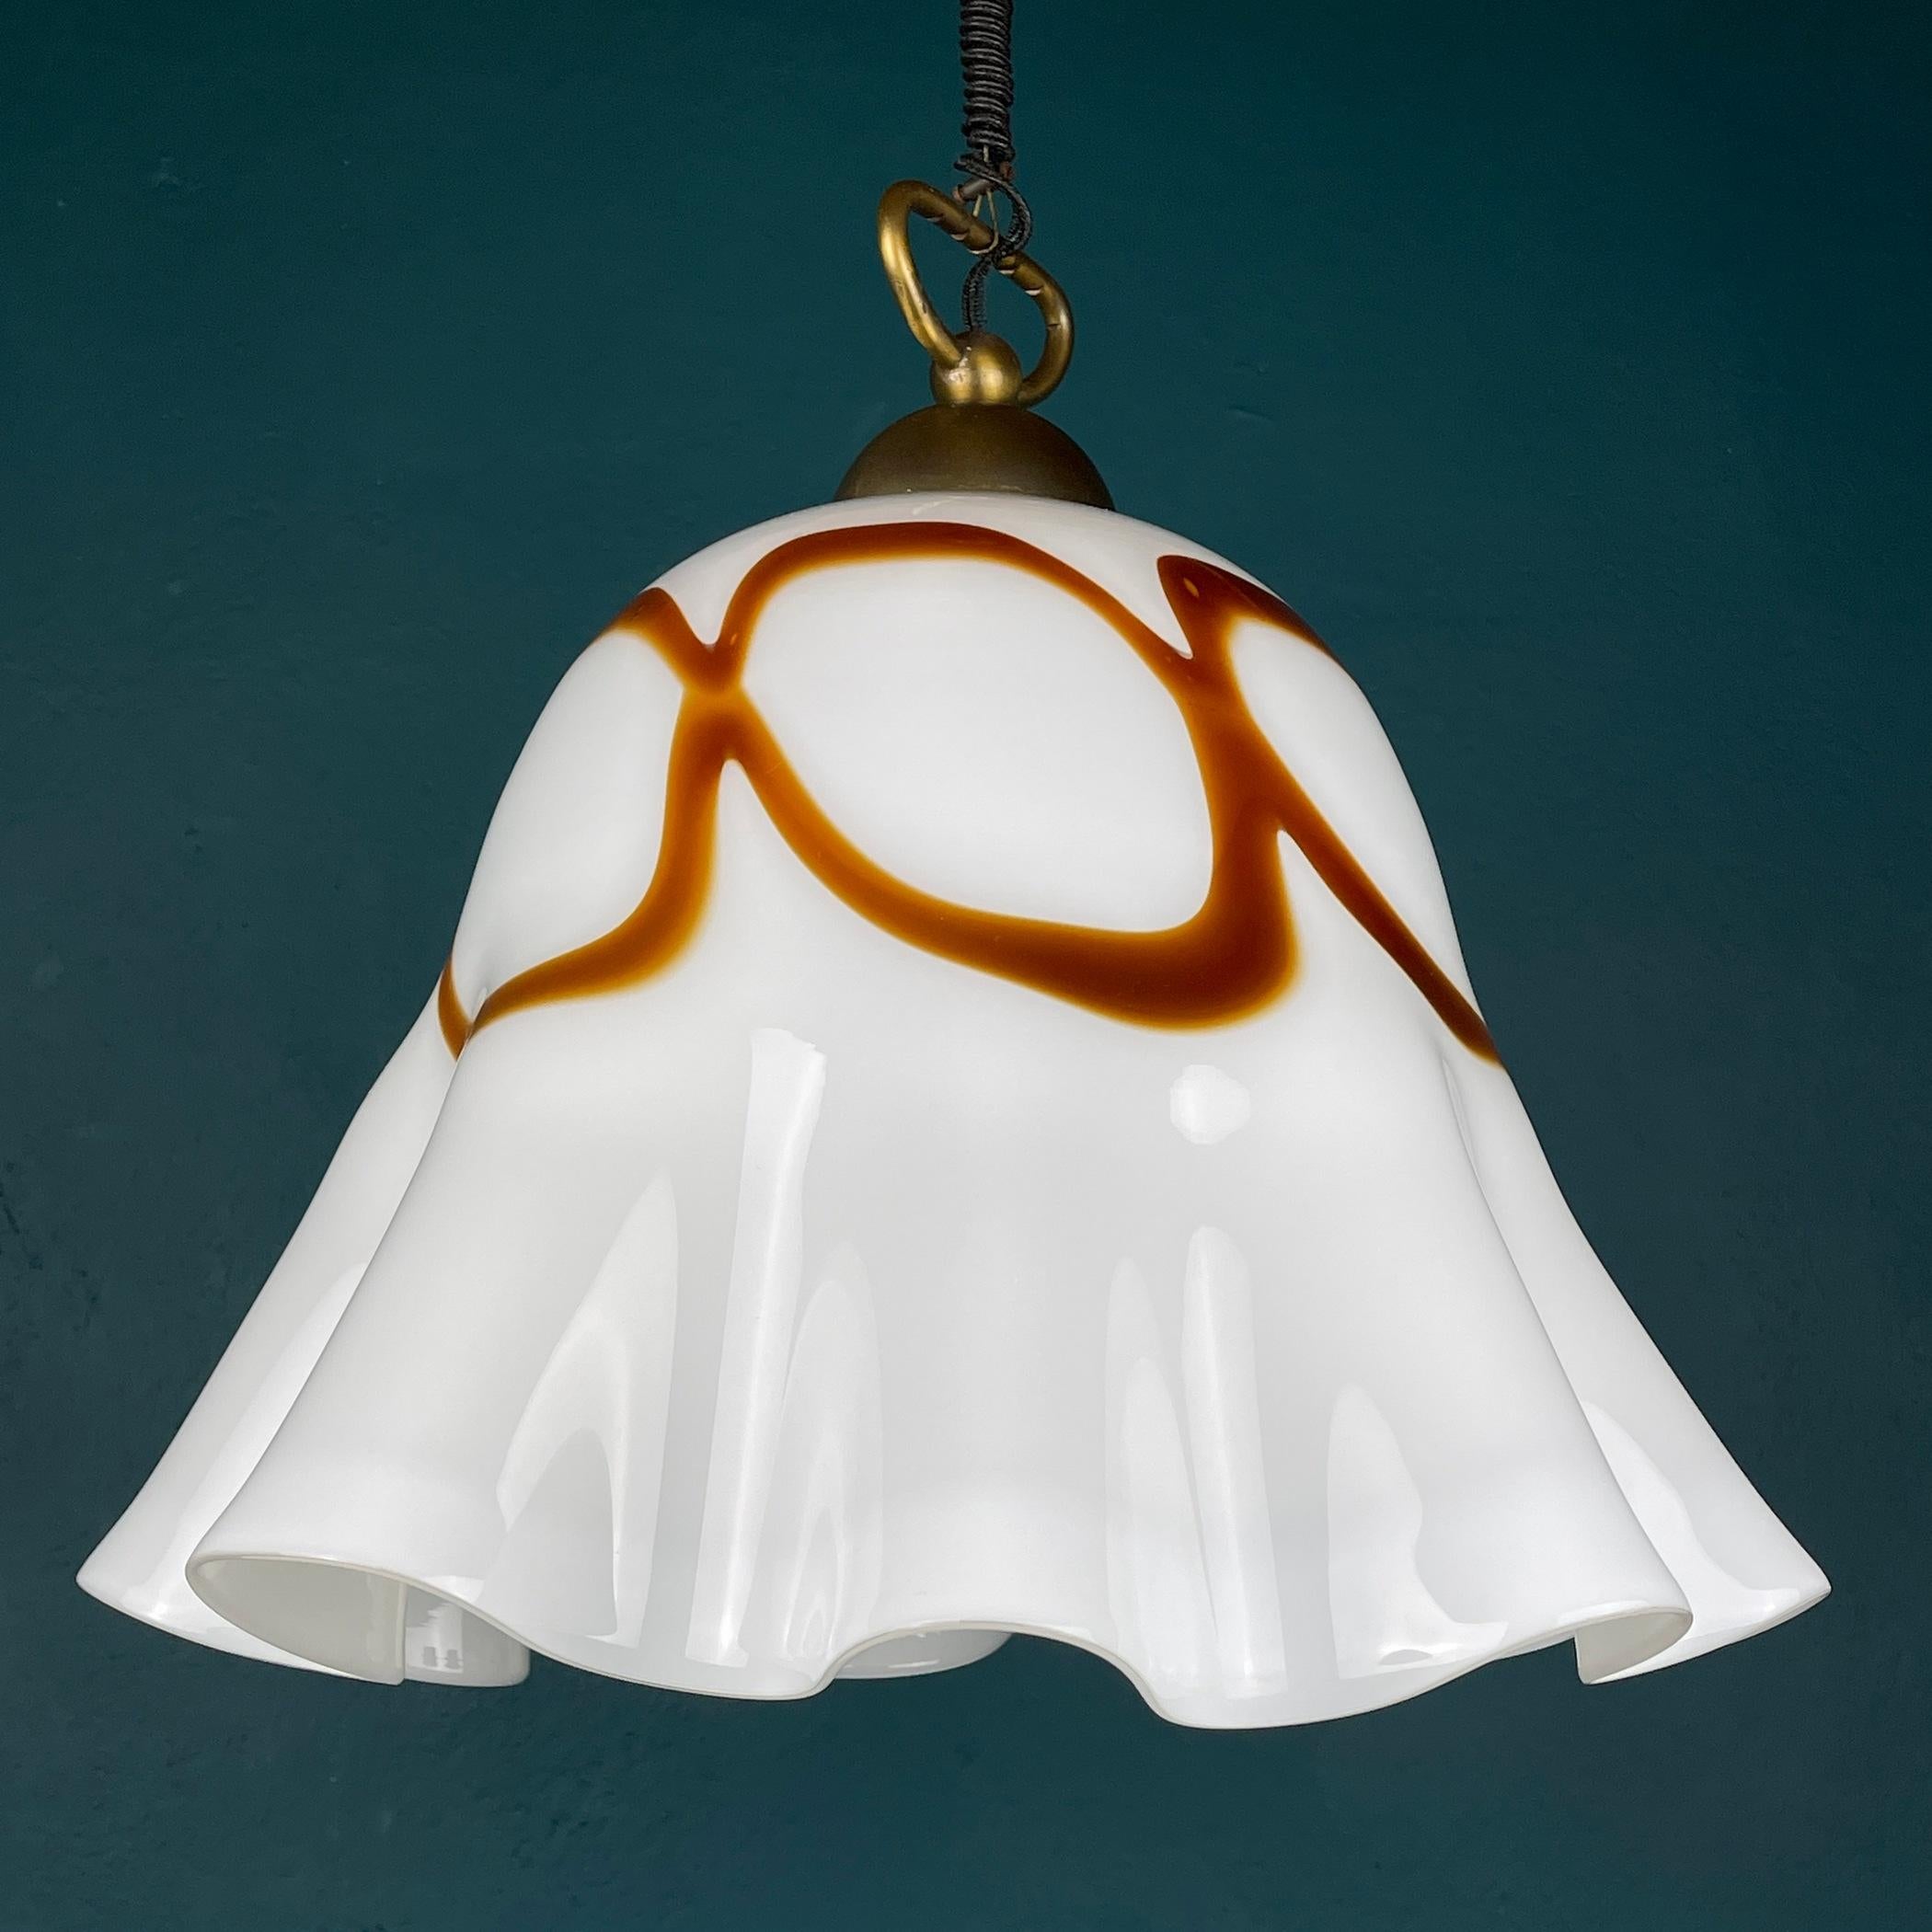 Vintage Murano Glass Pendant Lamp Fazzoletto Vetri Murano, Italy, 1970s For Sale 3